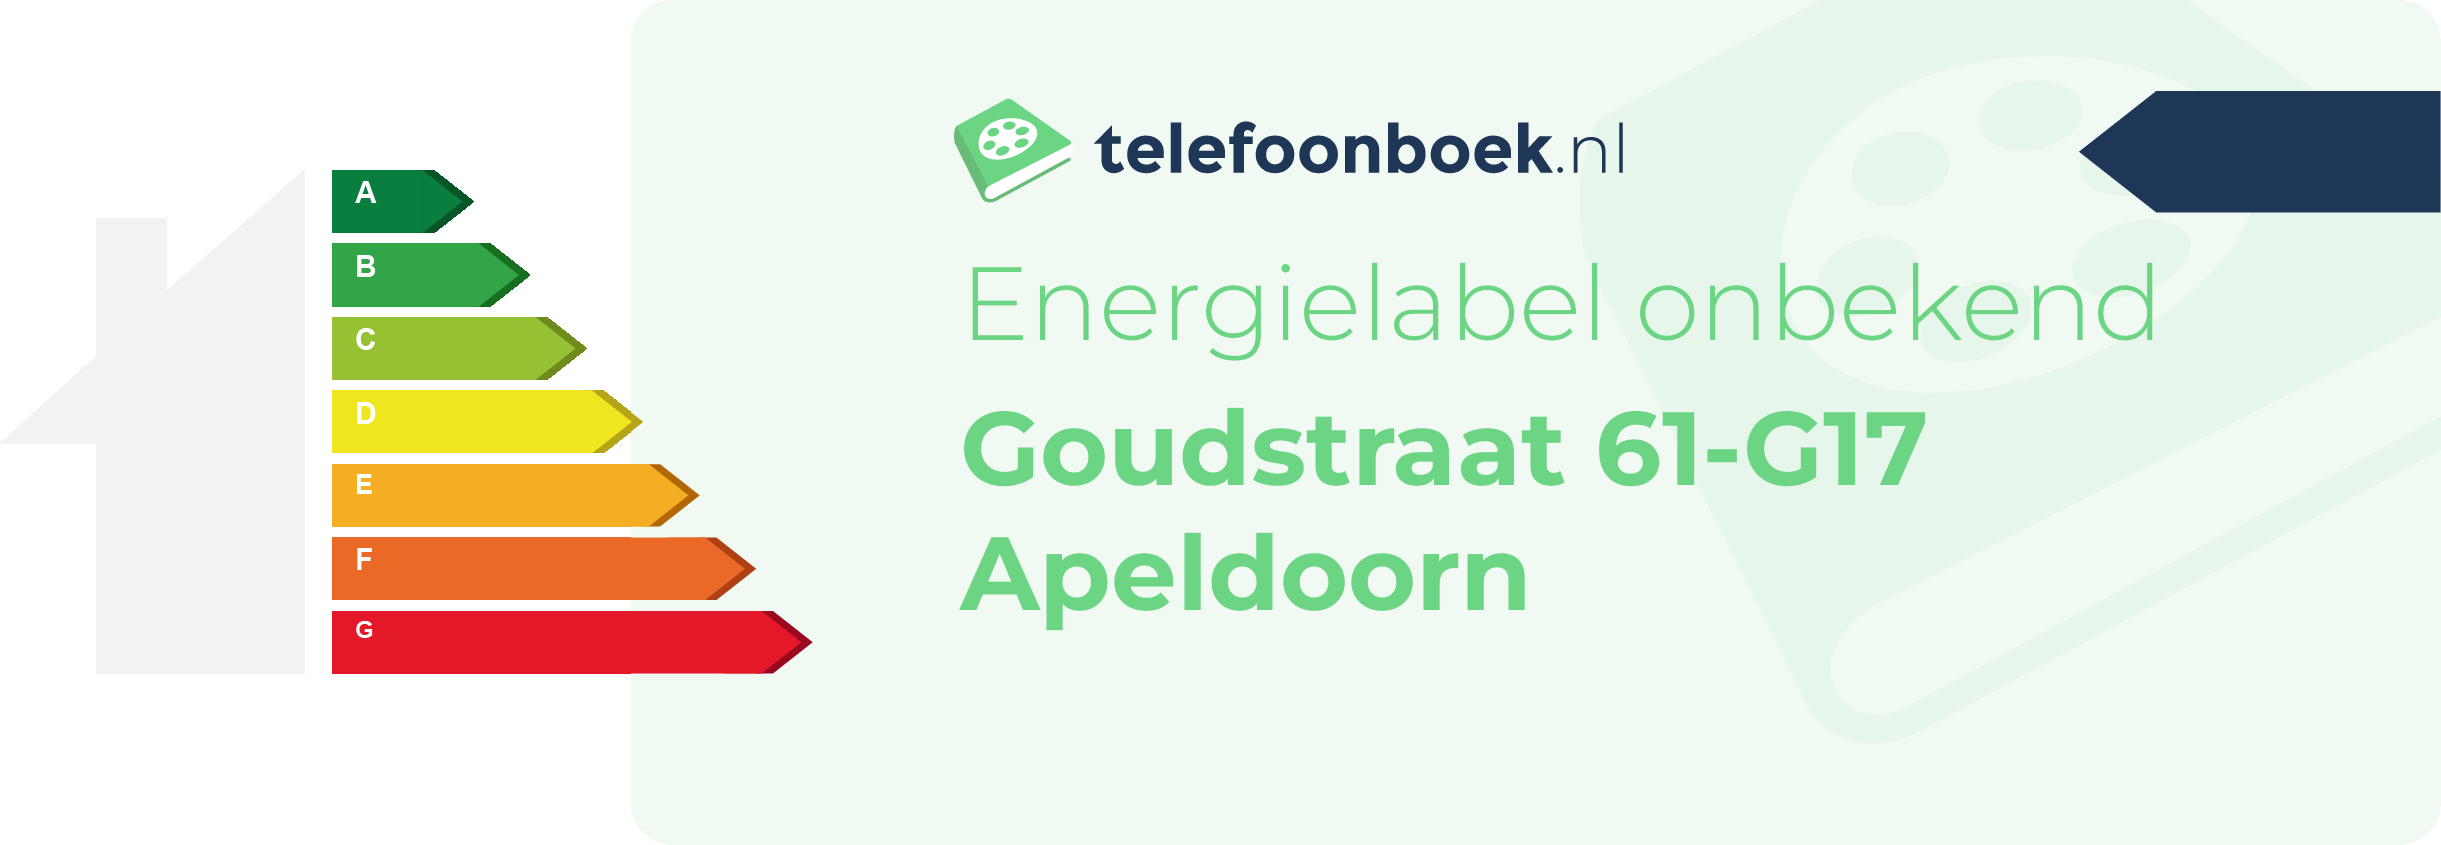 Energielabel Goudstraat 61-G17 Apeldoorn